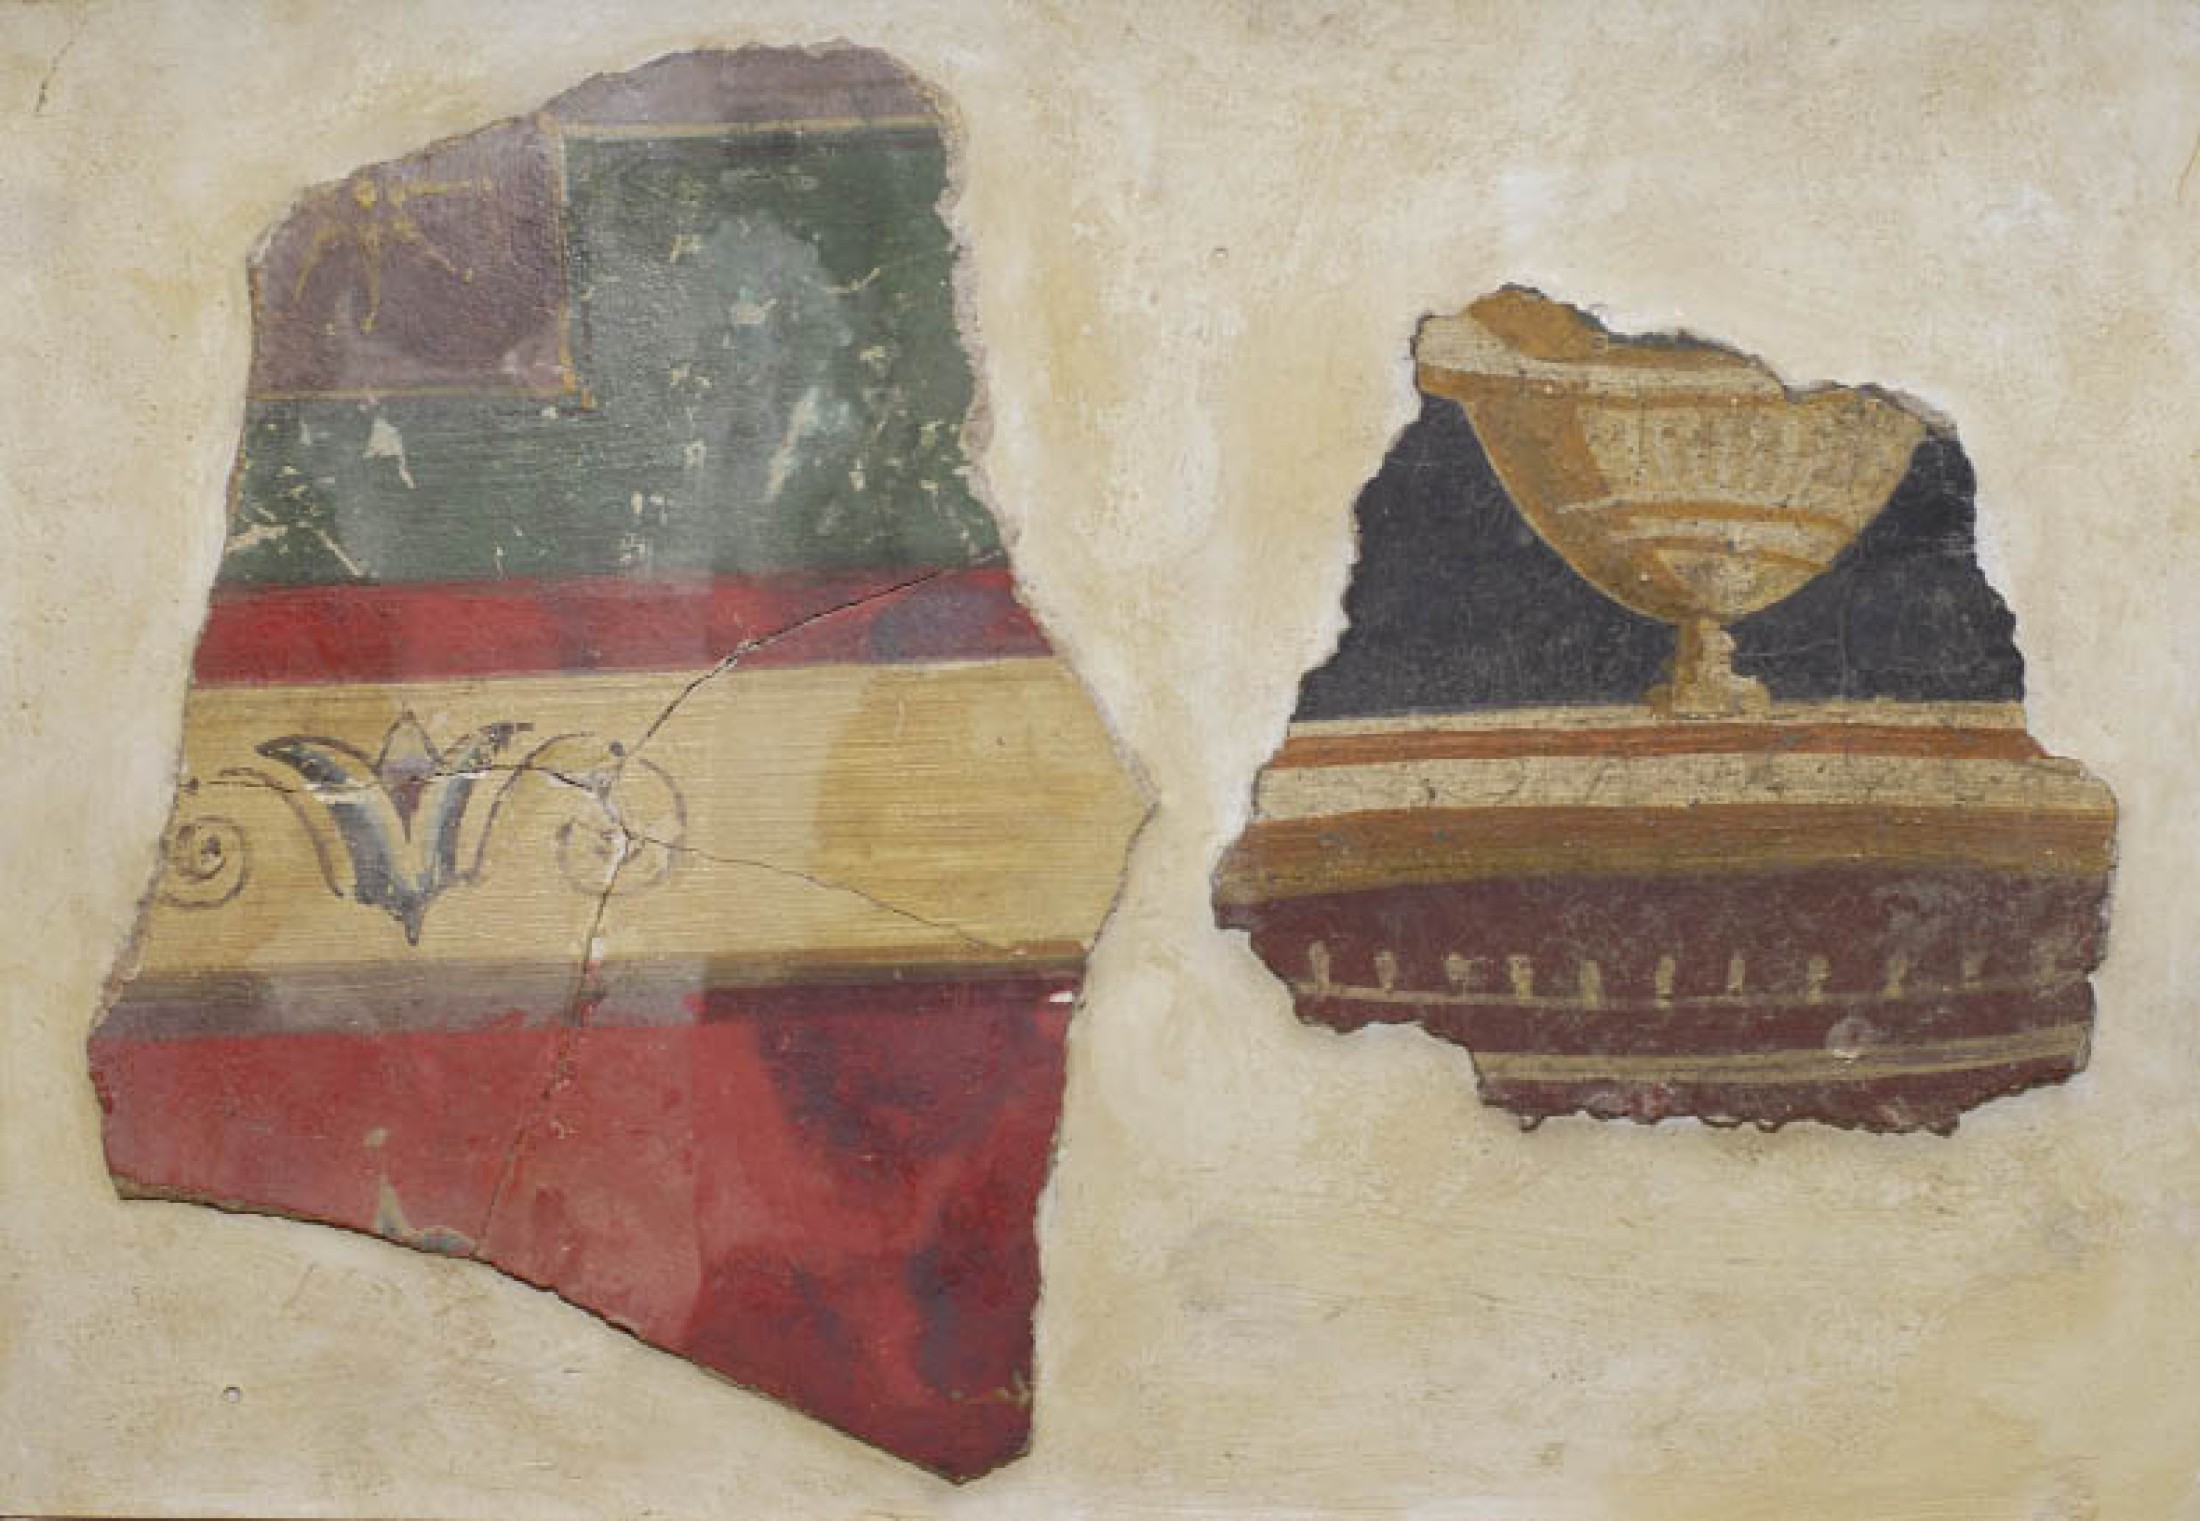 : Fragmente von mehrfarbig bemaltem Wandverputz römischer Zeit aus Hallstatt (Foto: A. W. Rausch - NHM Wien)